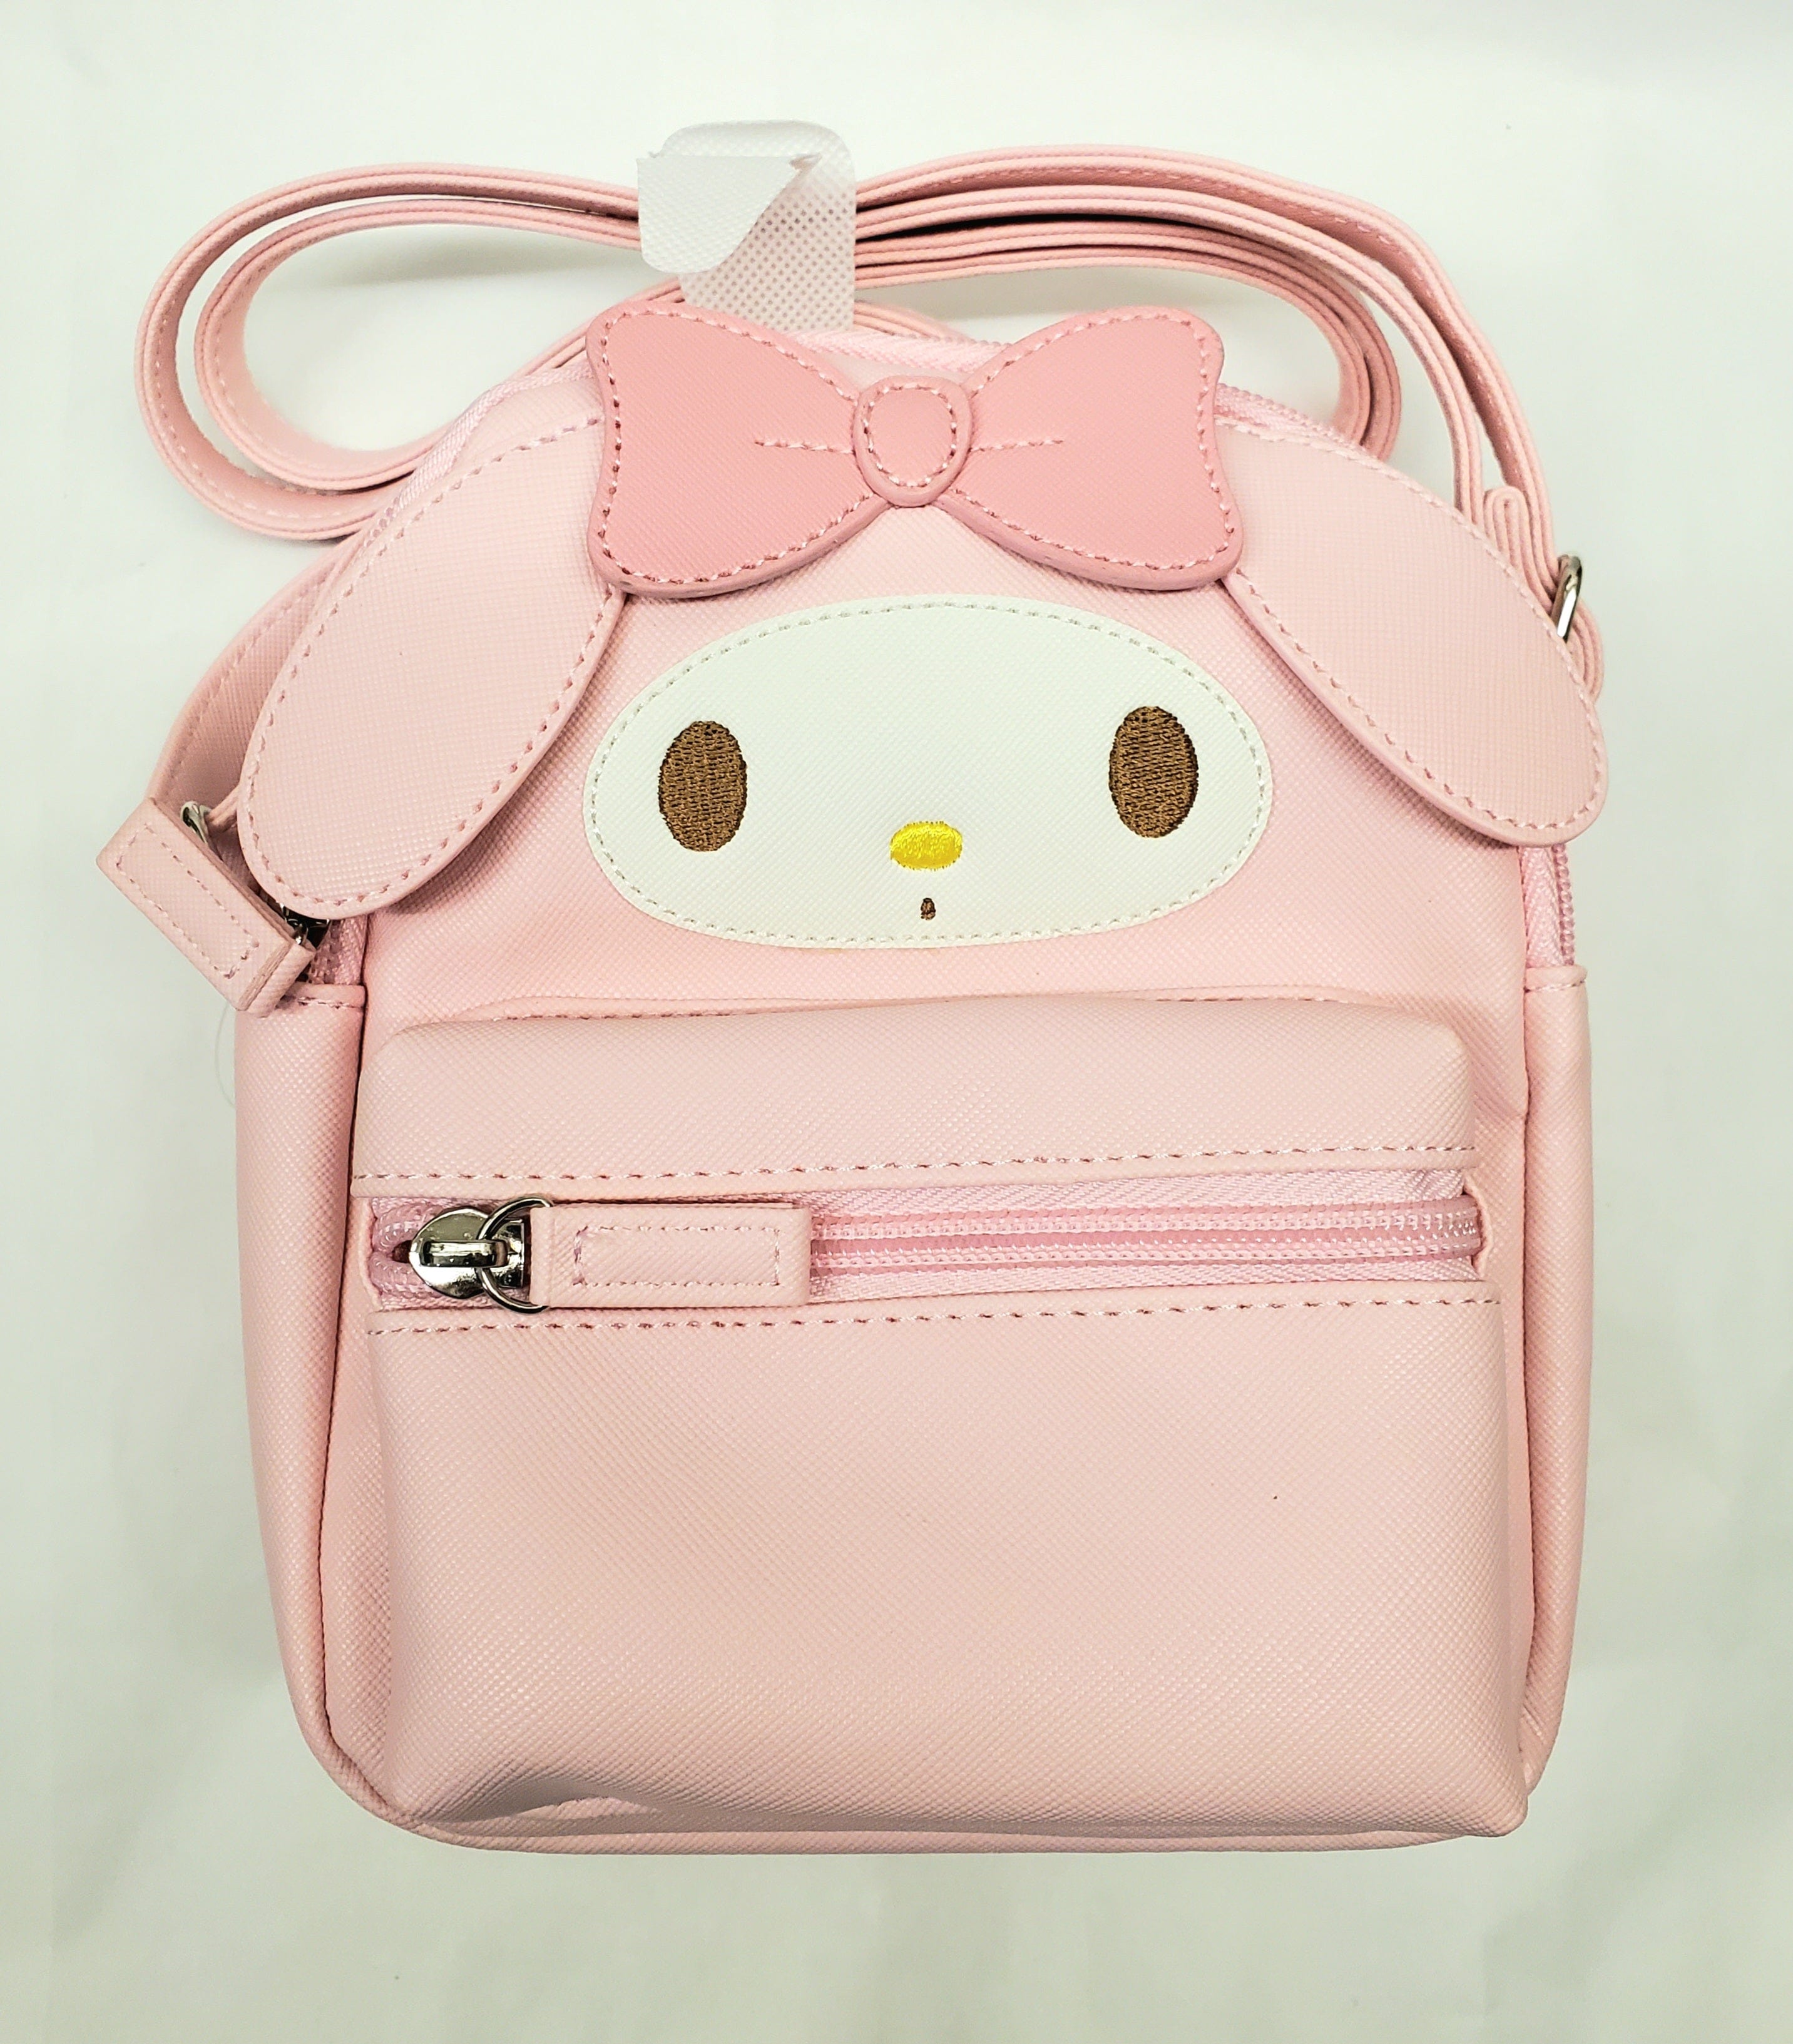 Enesco Sanrio My Melody Face Shoulder Bag Kawaii Gifts 4550337413531